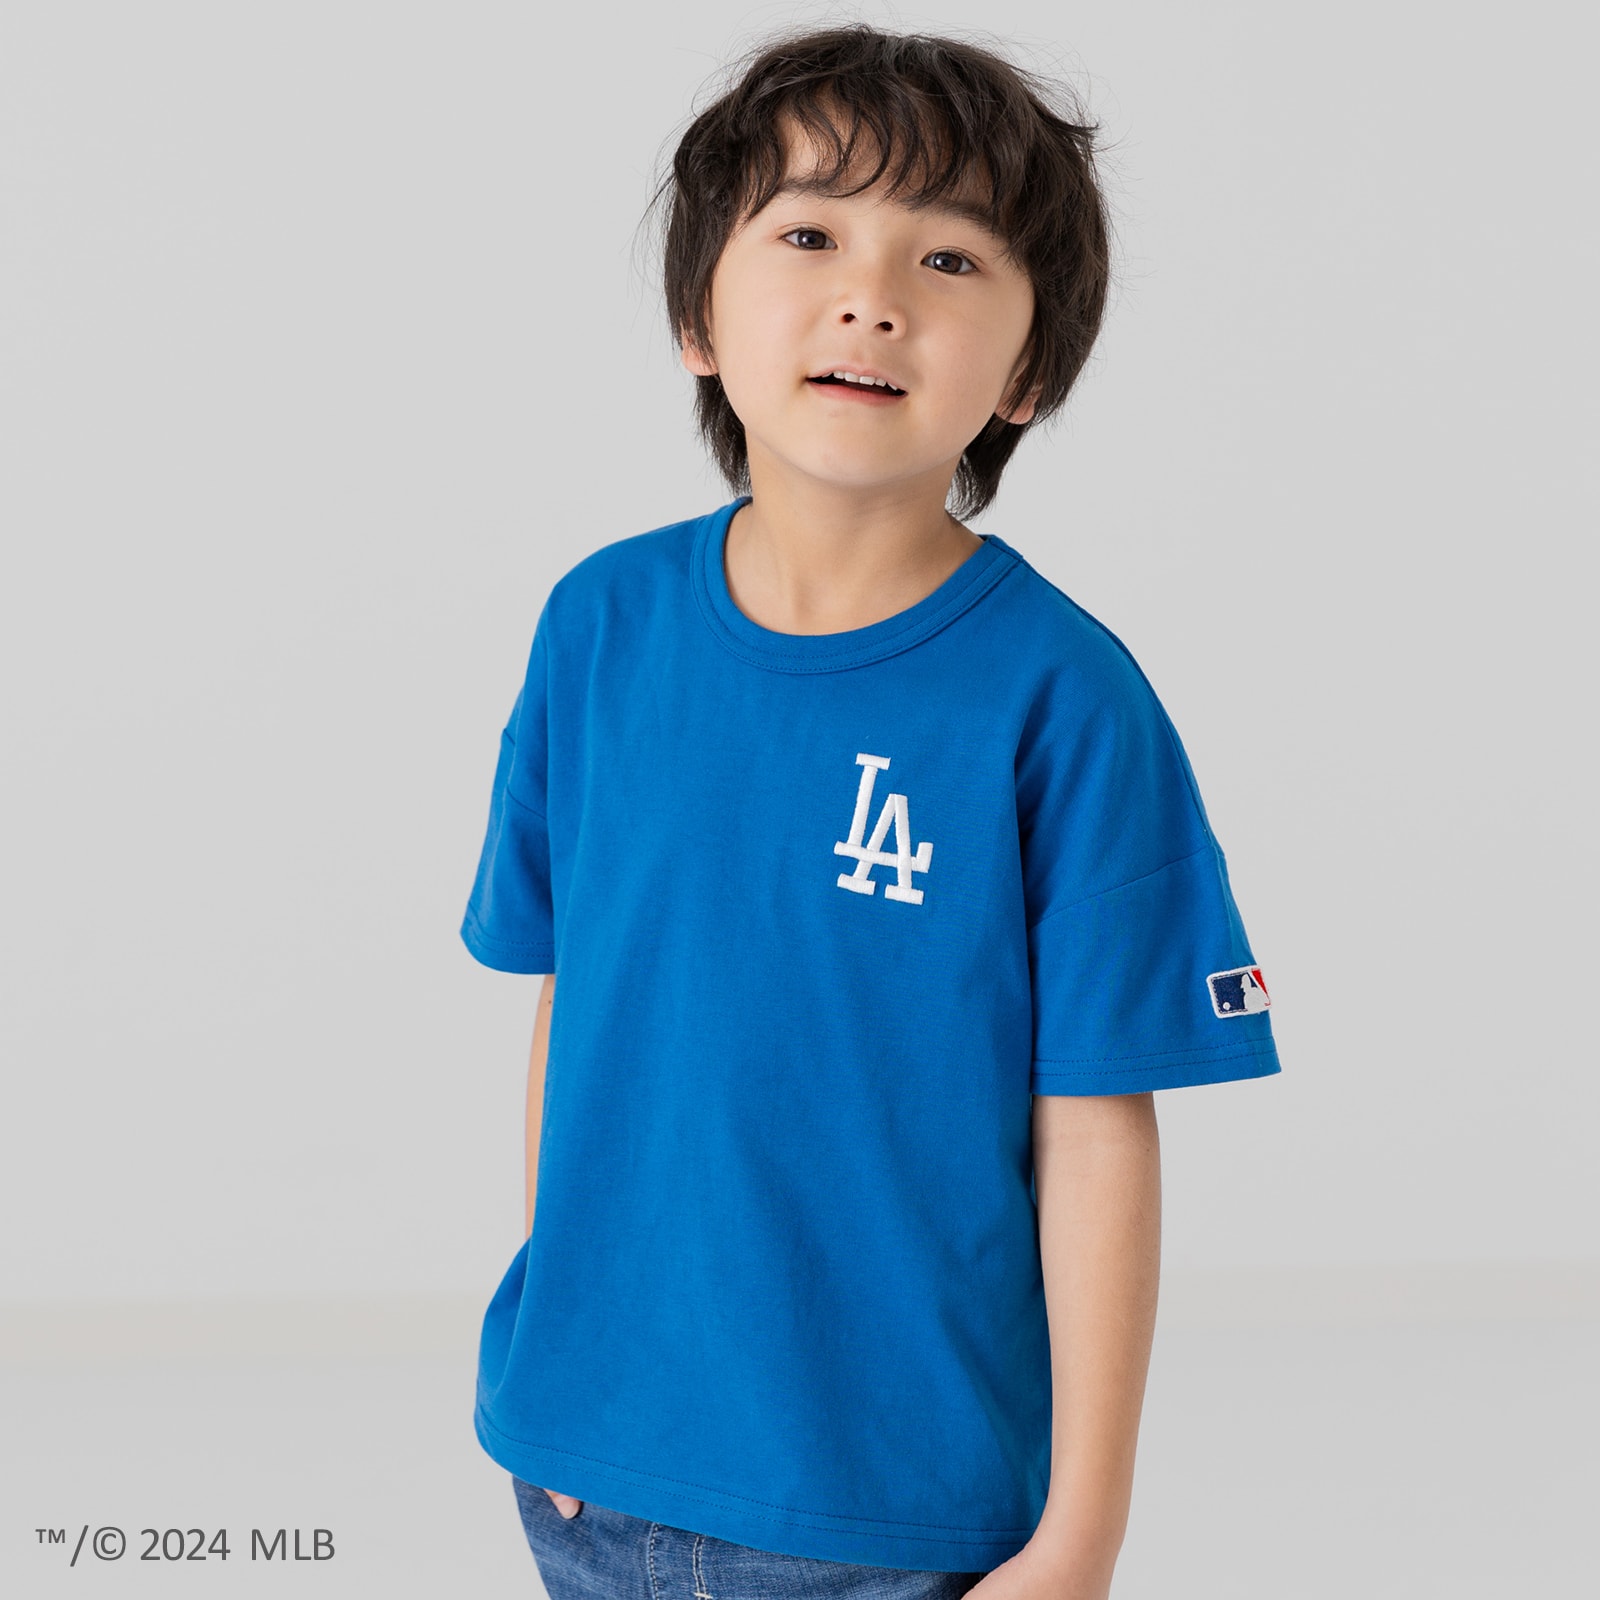 キッズ Tシャツ 半袖 ベビー服 子供服 男の子 女の子 ロゴ MLB 刺繍 ヤンキース ドジャース...